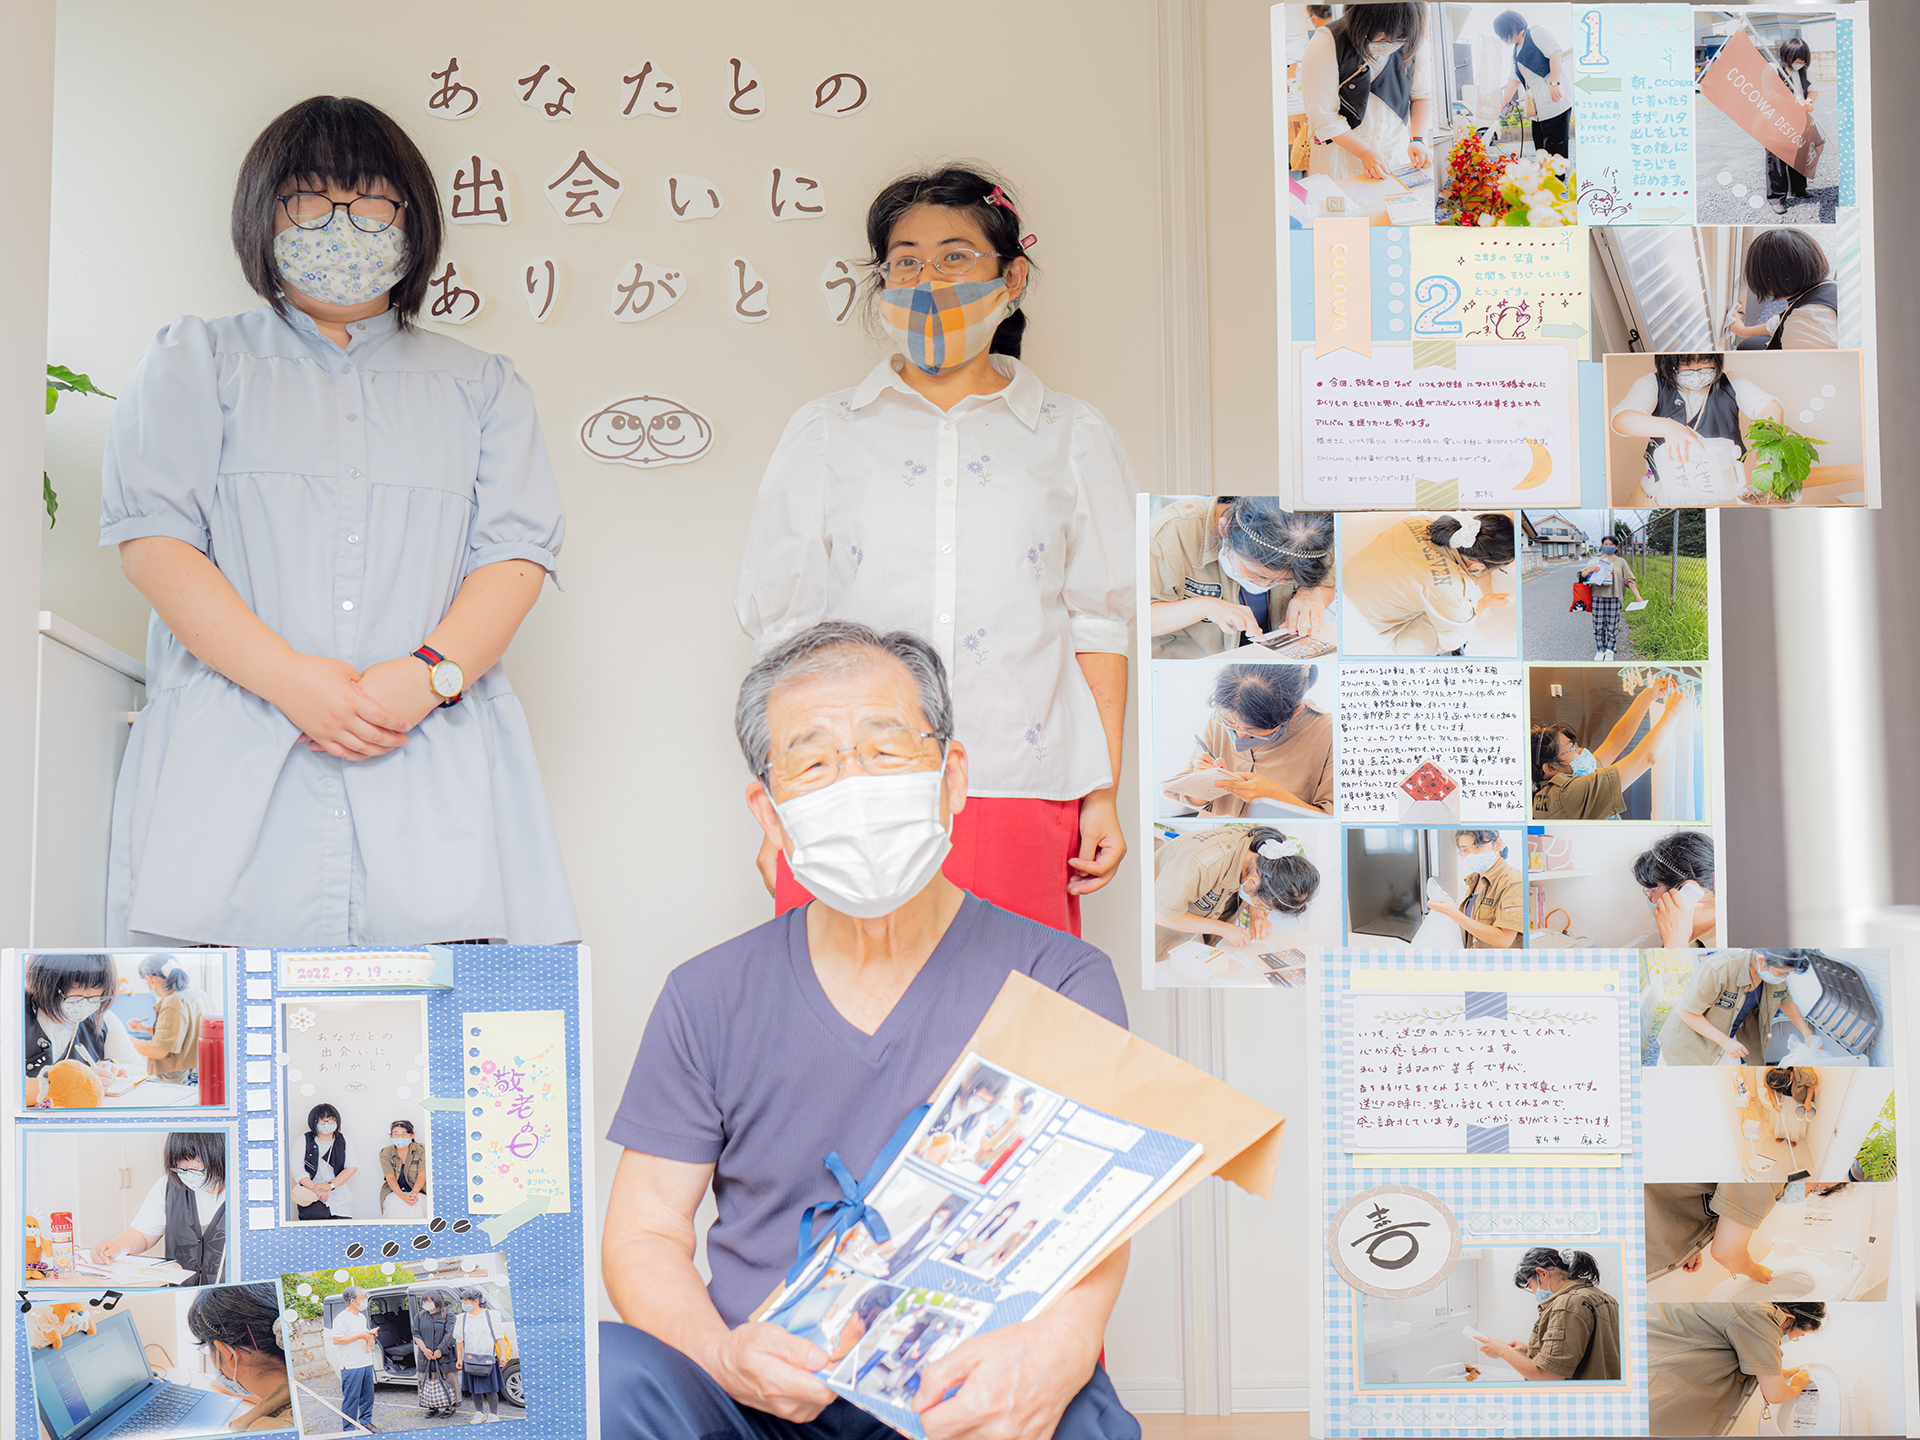 プレゼントしたアルバムと、送迎をしてくれている橋本さんとメンバーの写真